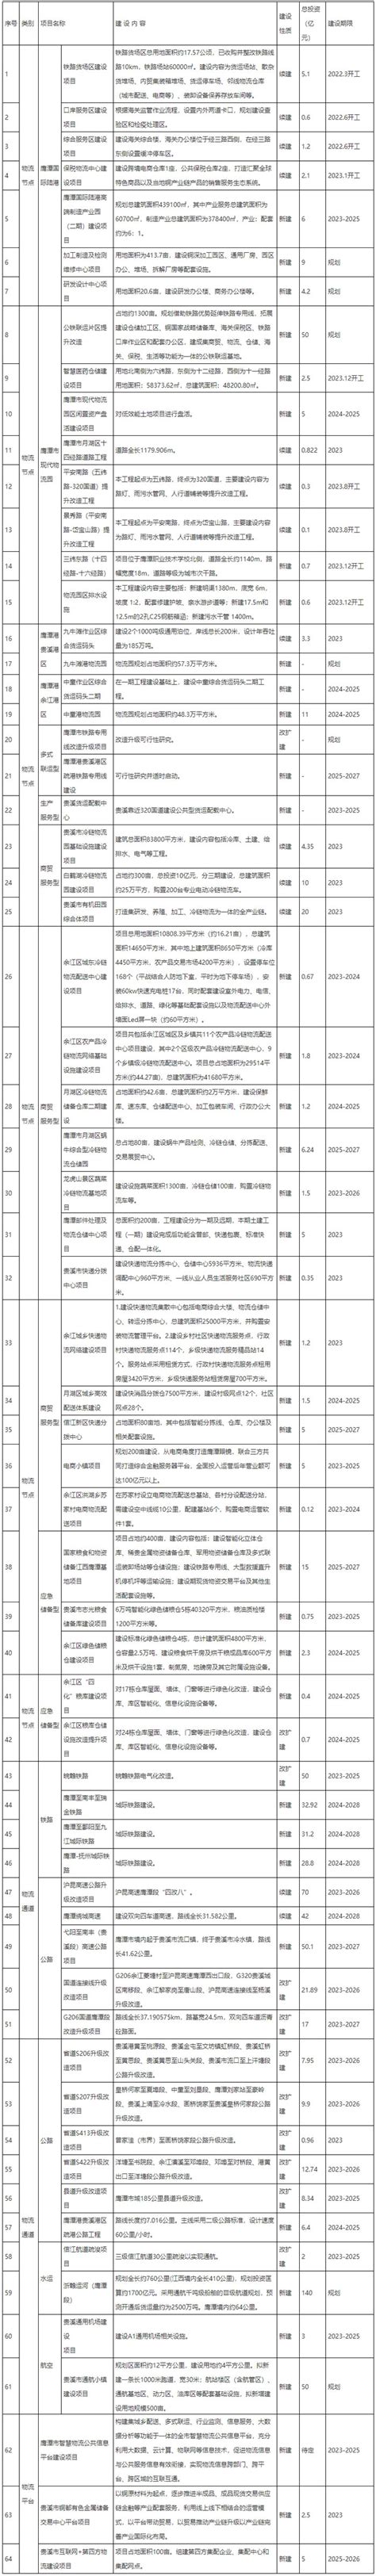 鹰潭市印发现代物流发展规划 64项重点项目清单公布-仓储物流